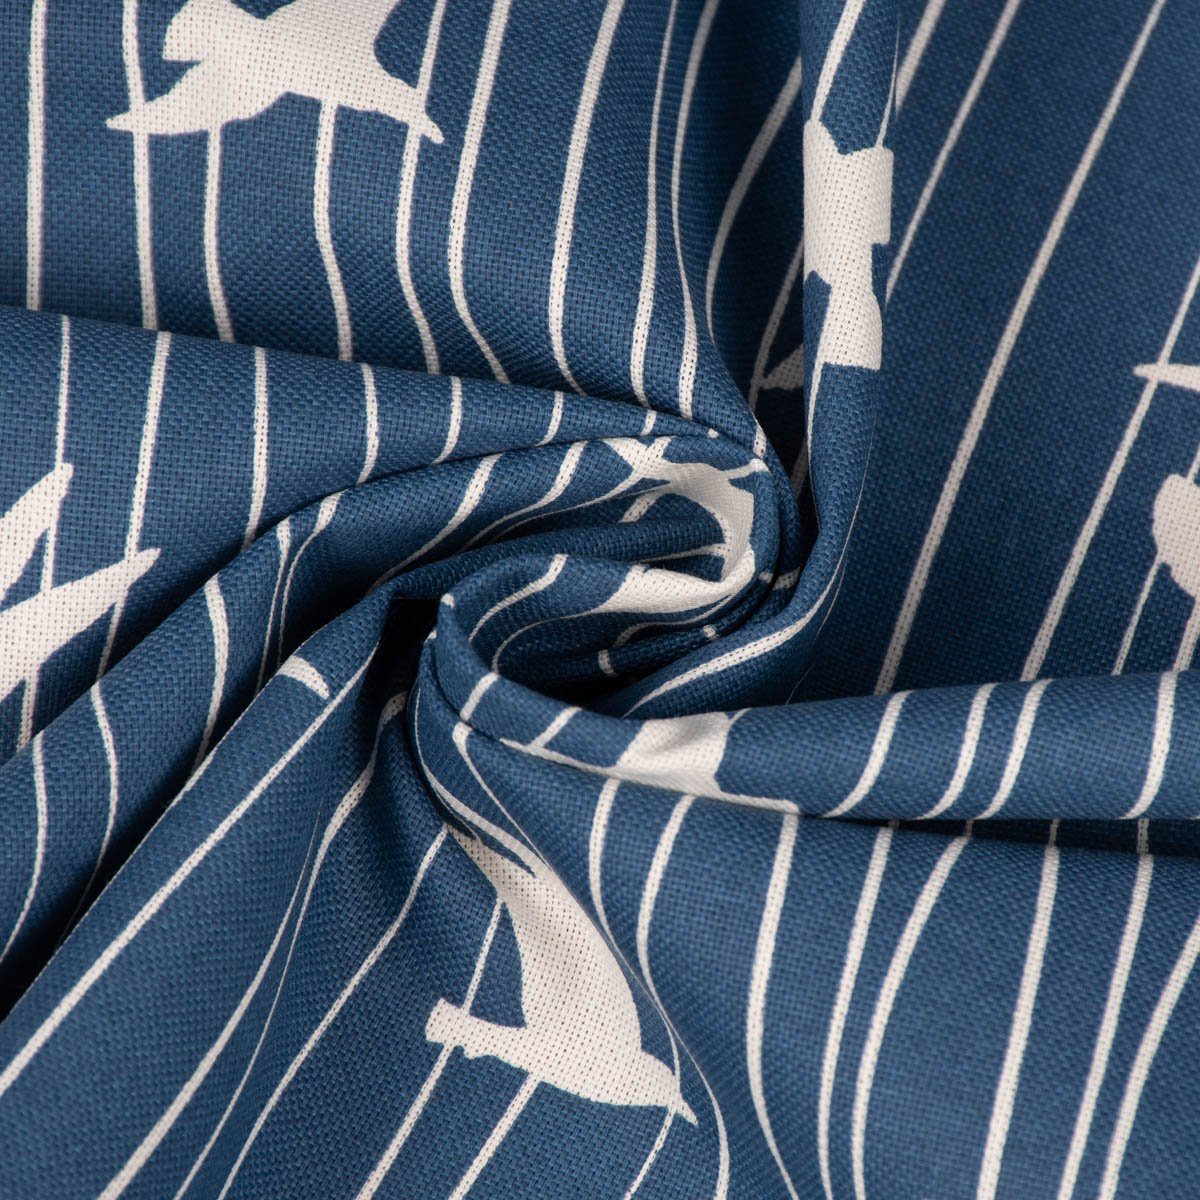 SCHÖNER Iconic LEBEN. SCHÖNER Möwen handmade Stripe LEBEN. Tischläufer Streifen Seagull Tischläufer blau,